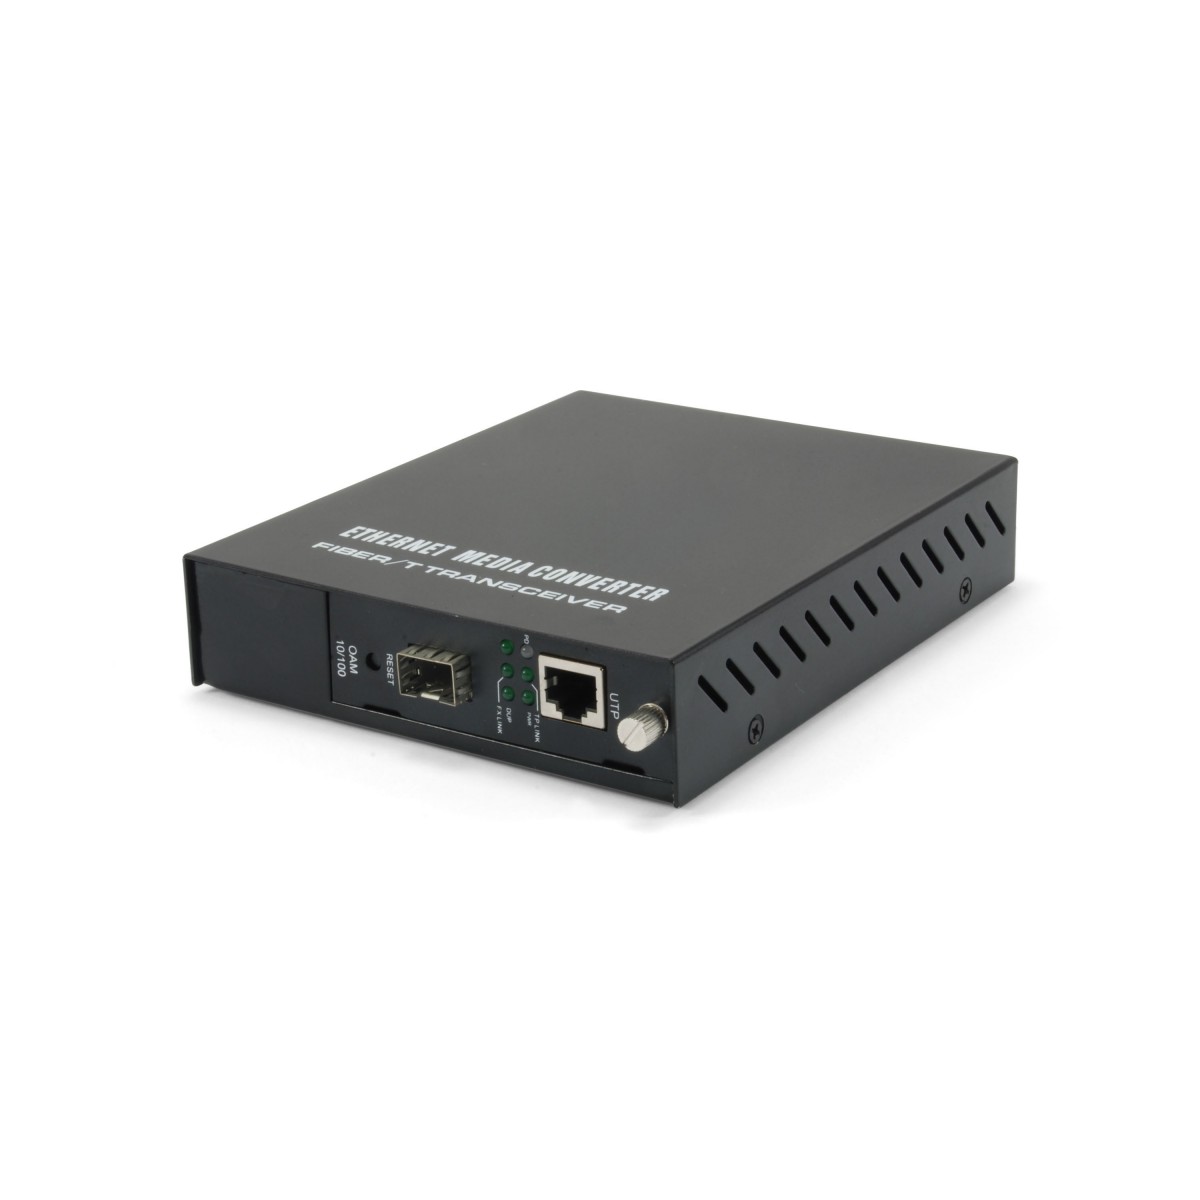 LevelOne RJ45 to SFP Managed Fast Ethernet Media Converter - 100 Mbit/s - IEEE 802.3,IEEE 802.3ah,IEEE 802.3u,IEEE 802.3x - Fast